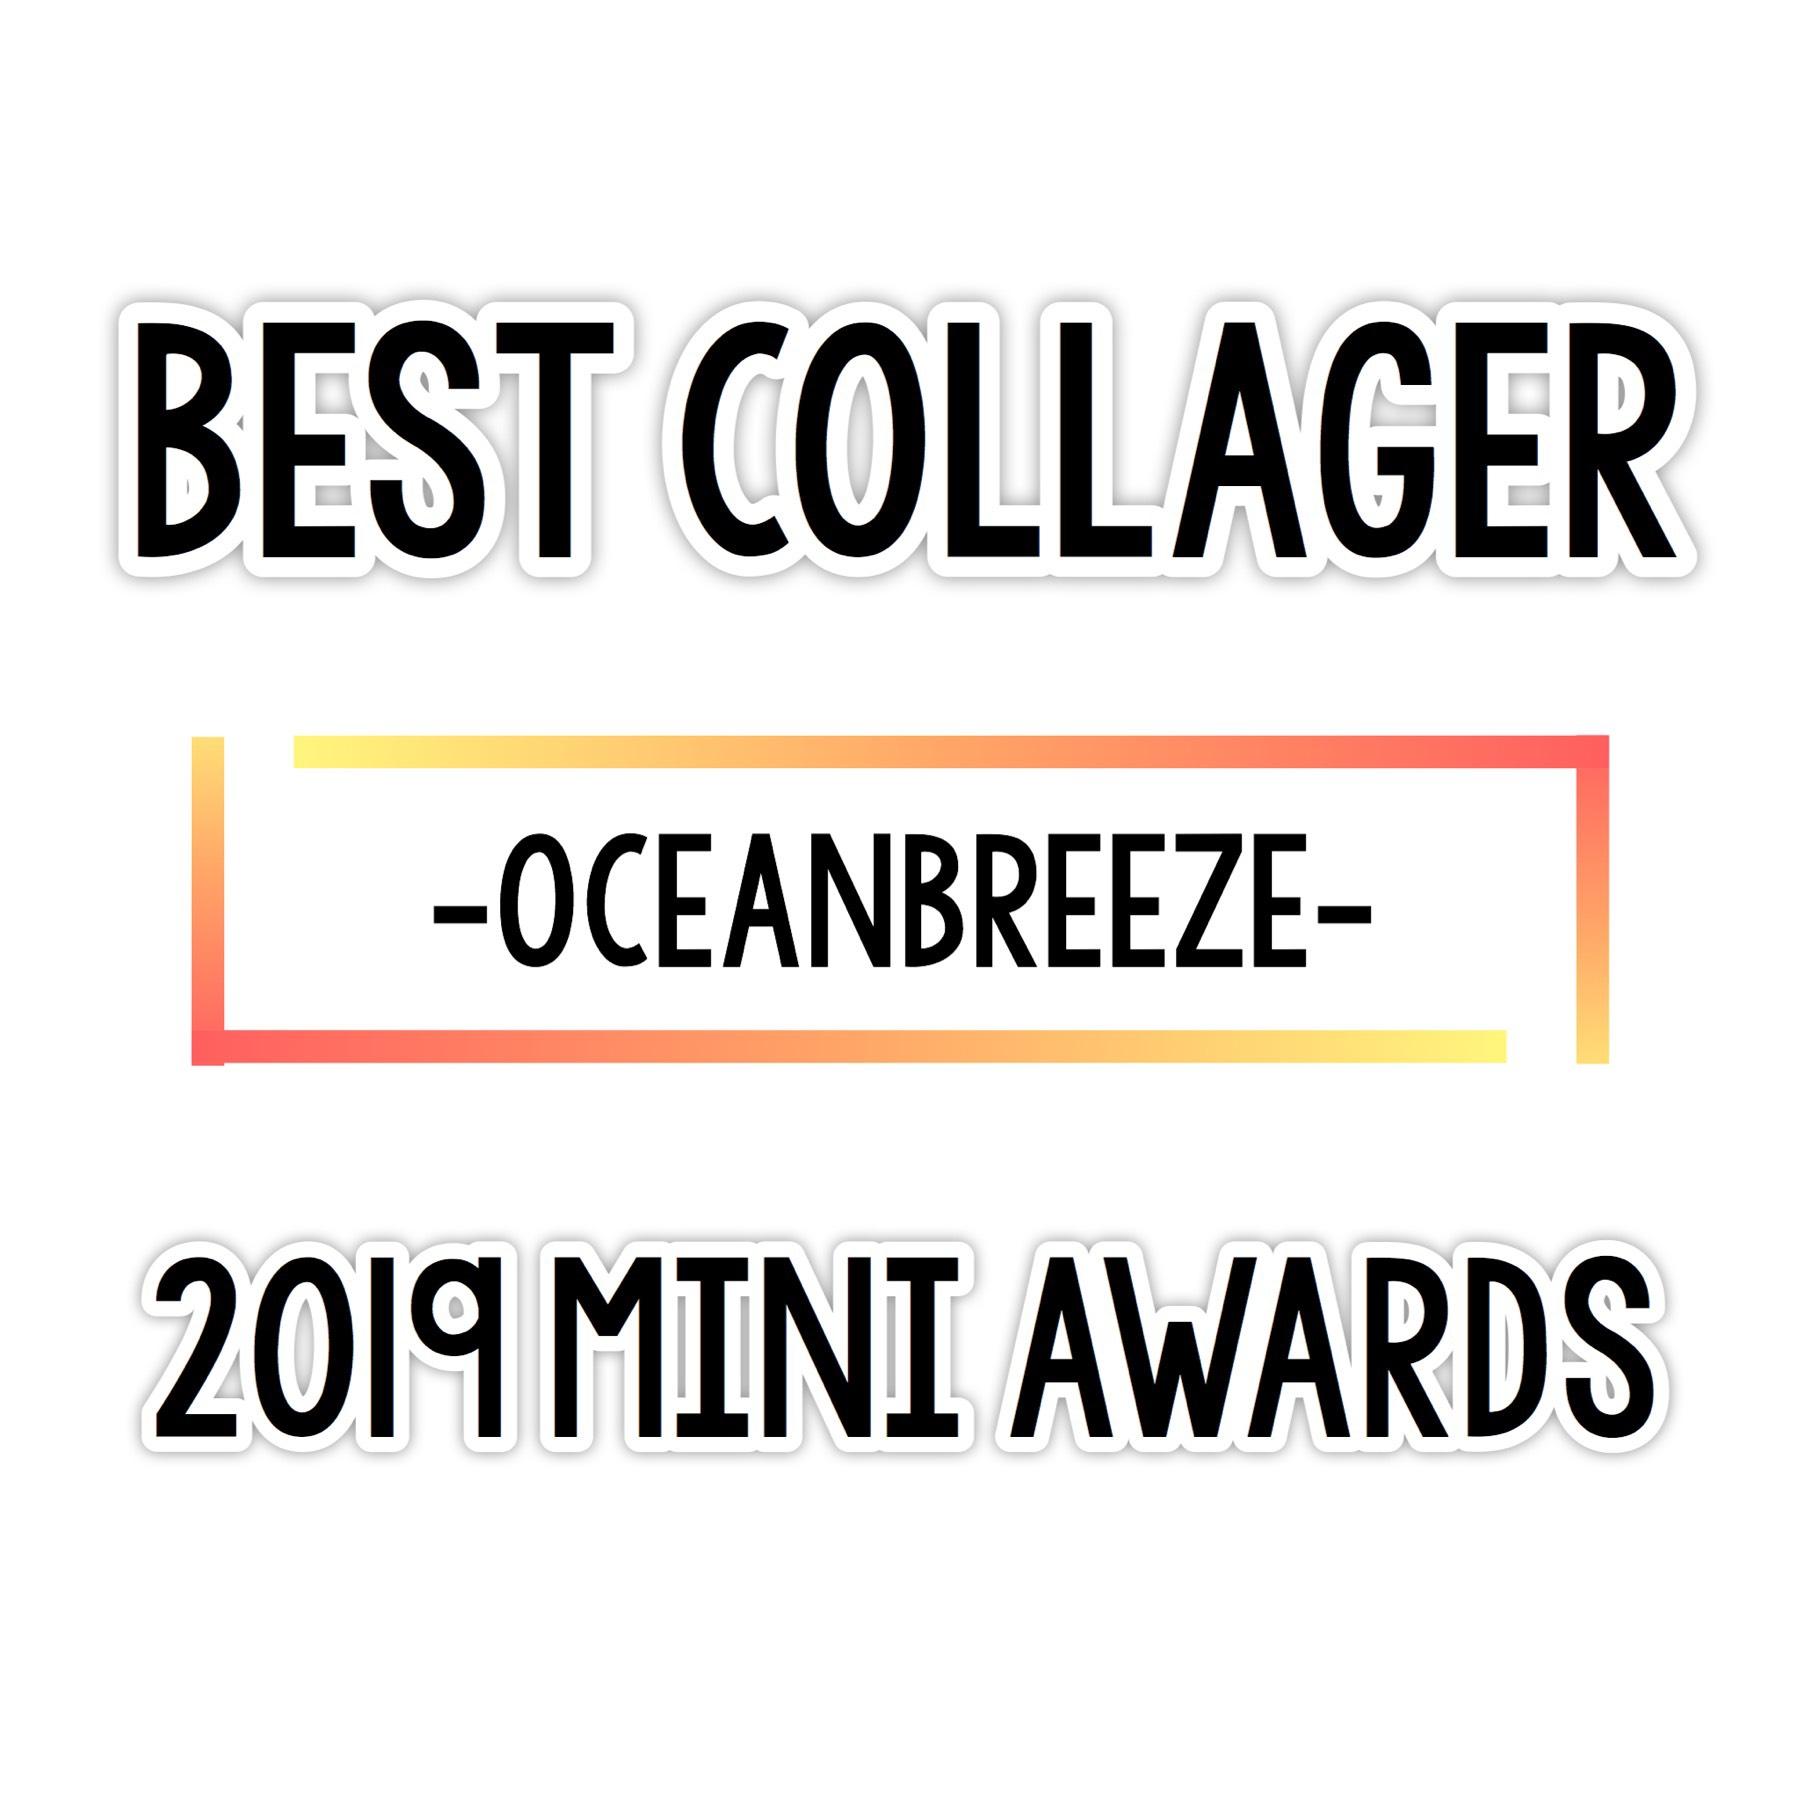 Congratulations -OceanBreeze- !